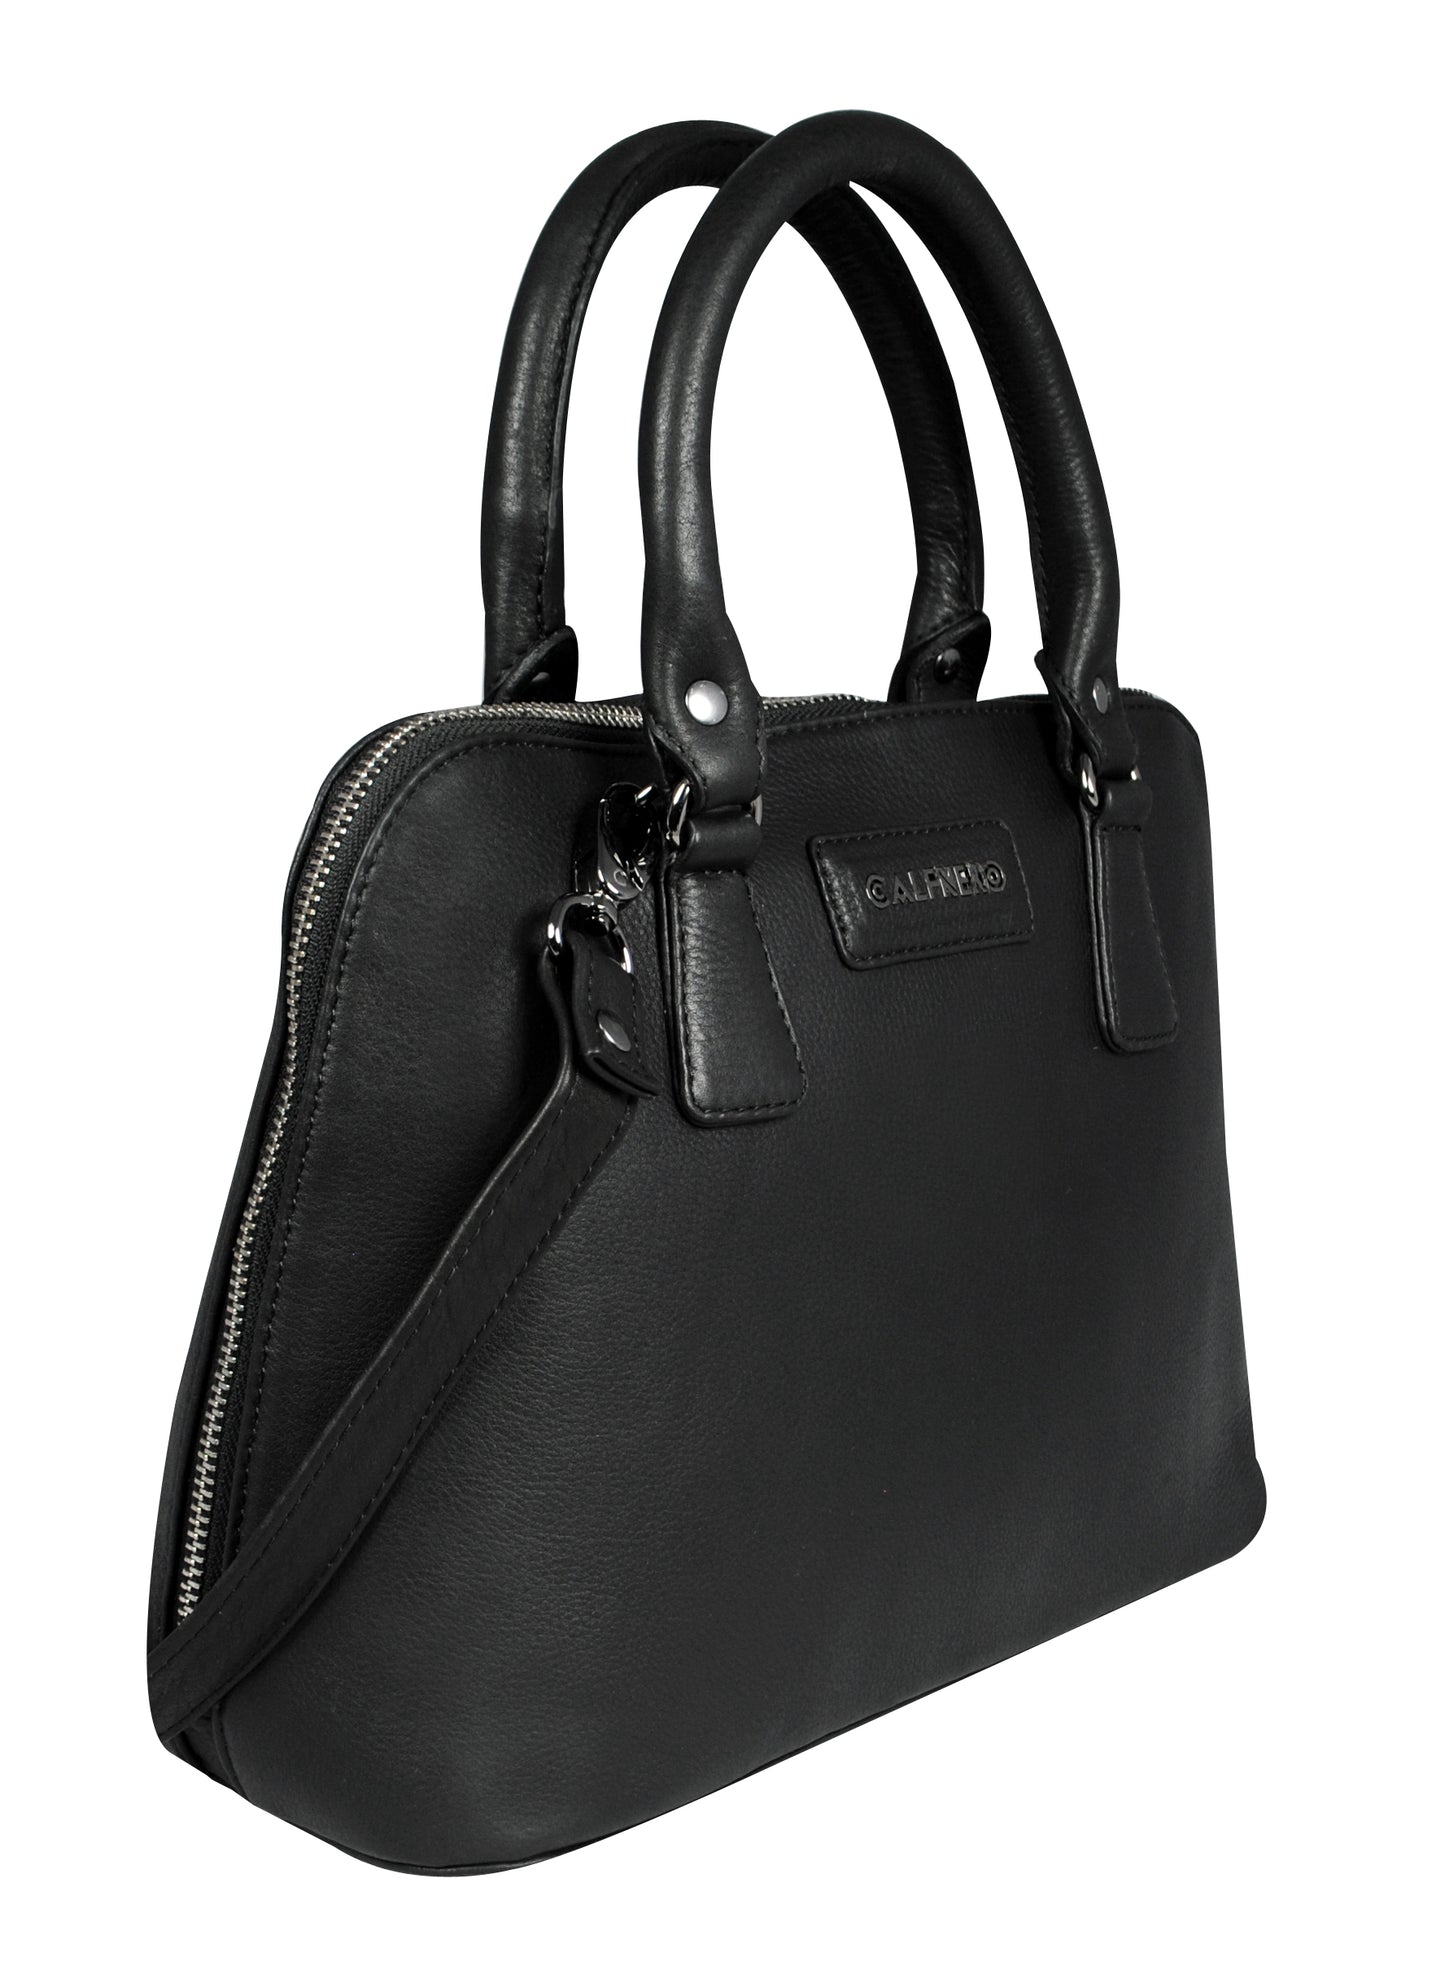 Calfnero Women's Genuine Leather Hand Bag (CON-2-Black)